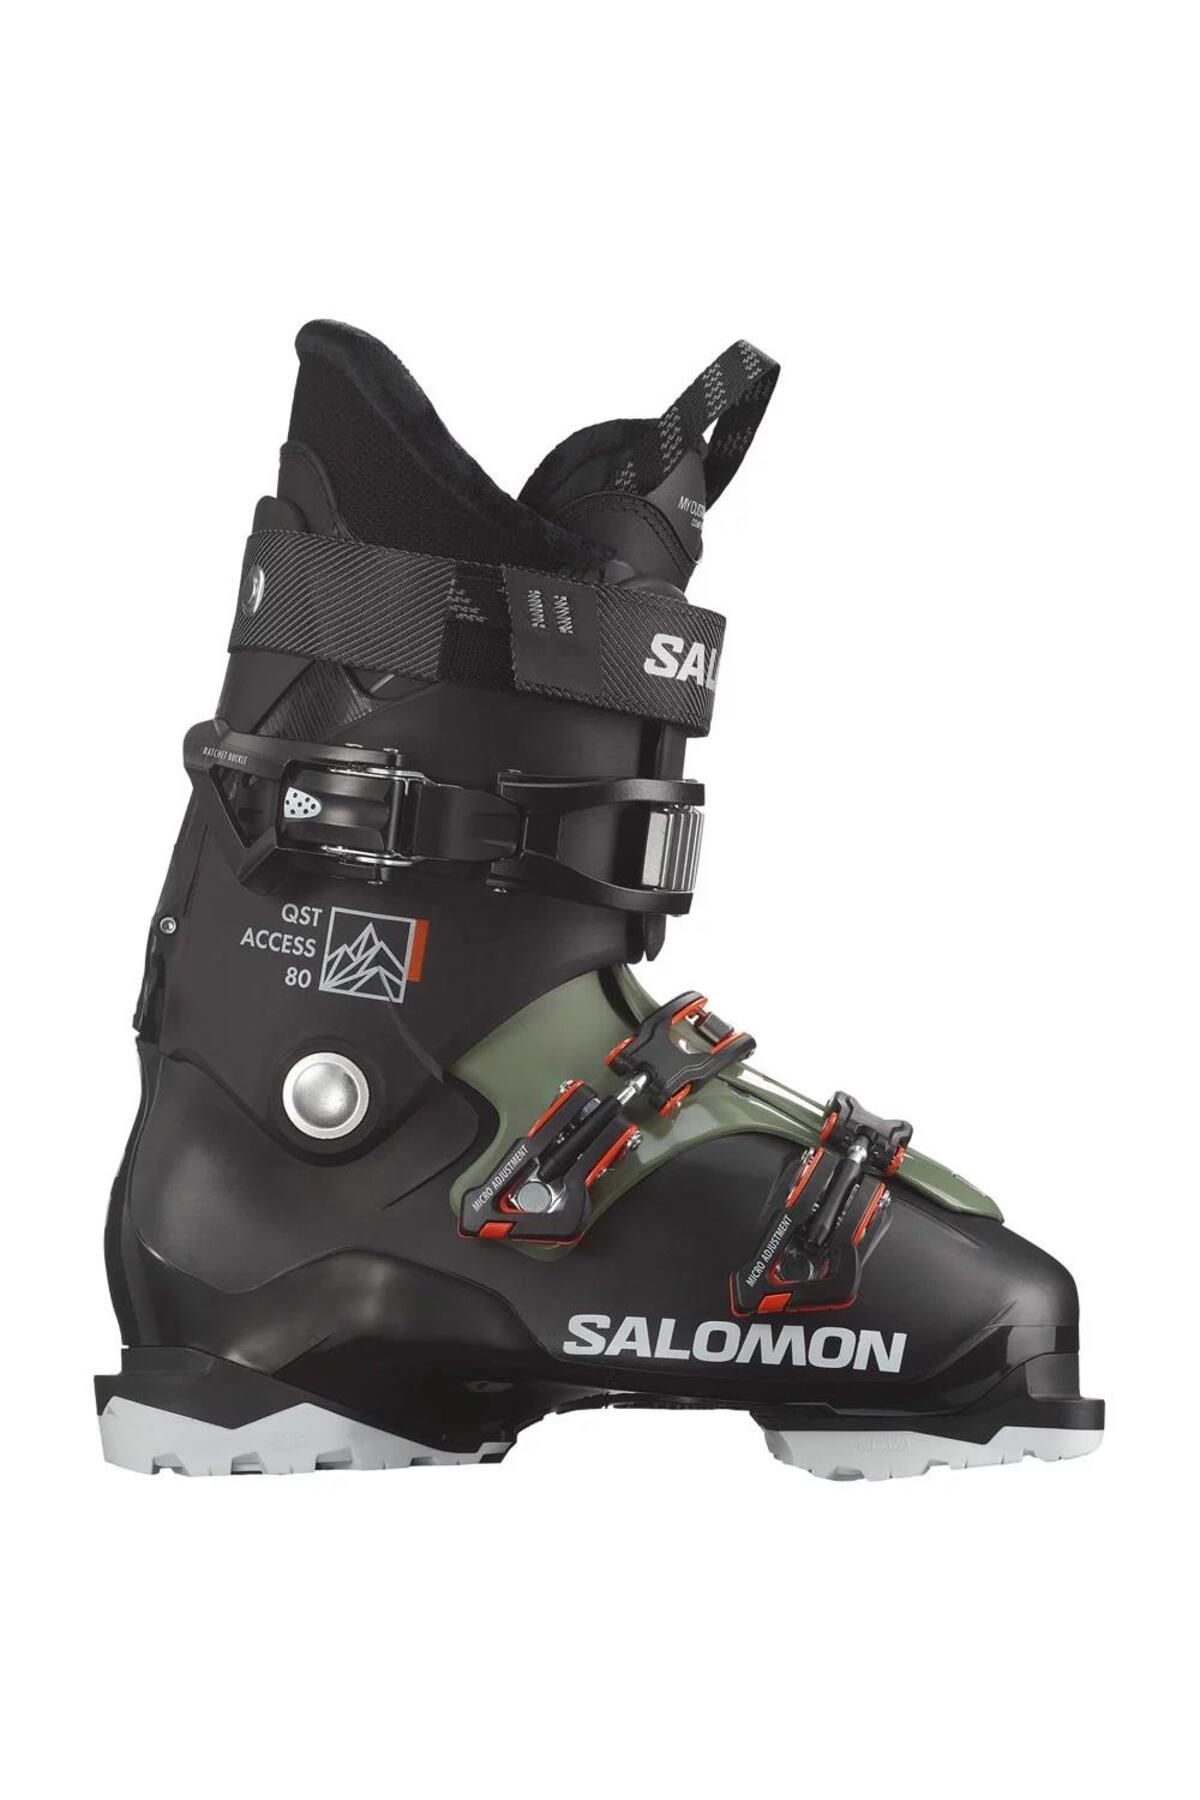 Salomon Qst Access 80 Erkek Kayak Ayakkabısı-l47344300219